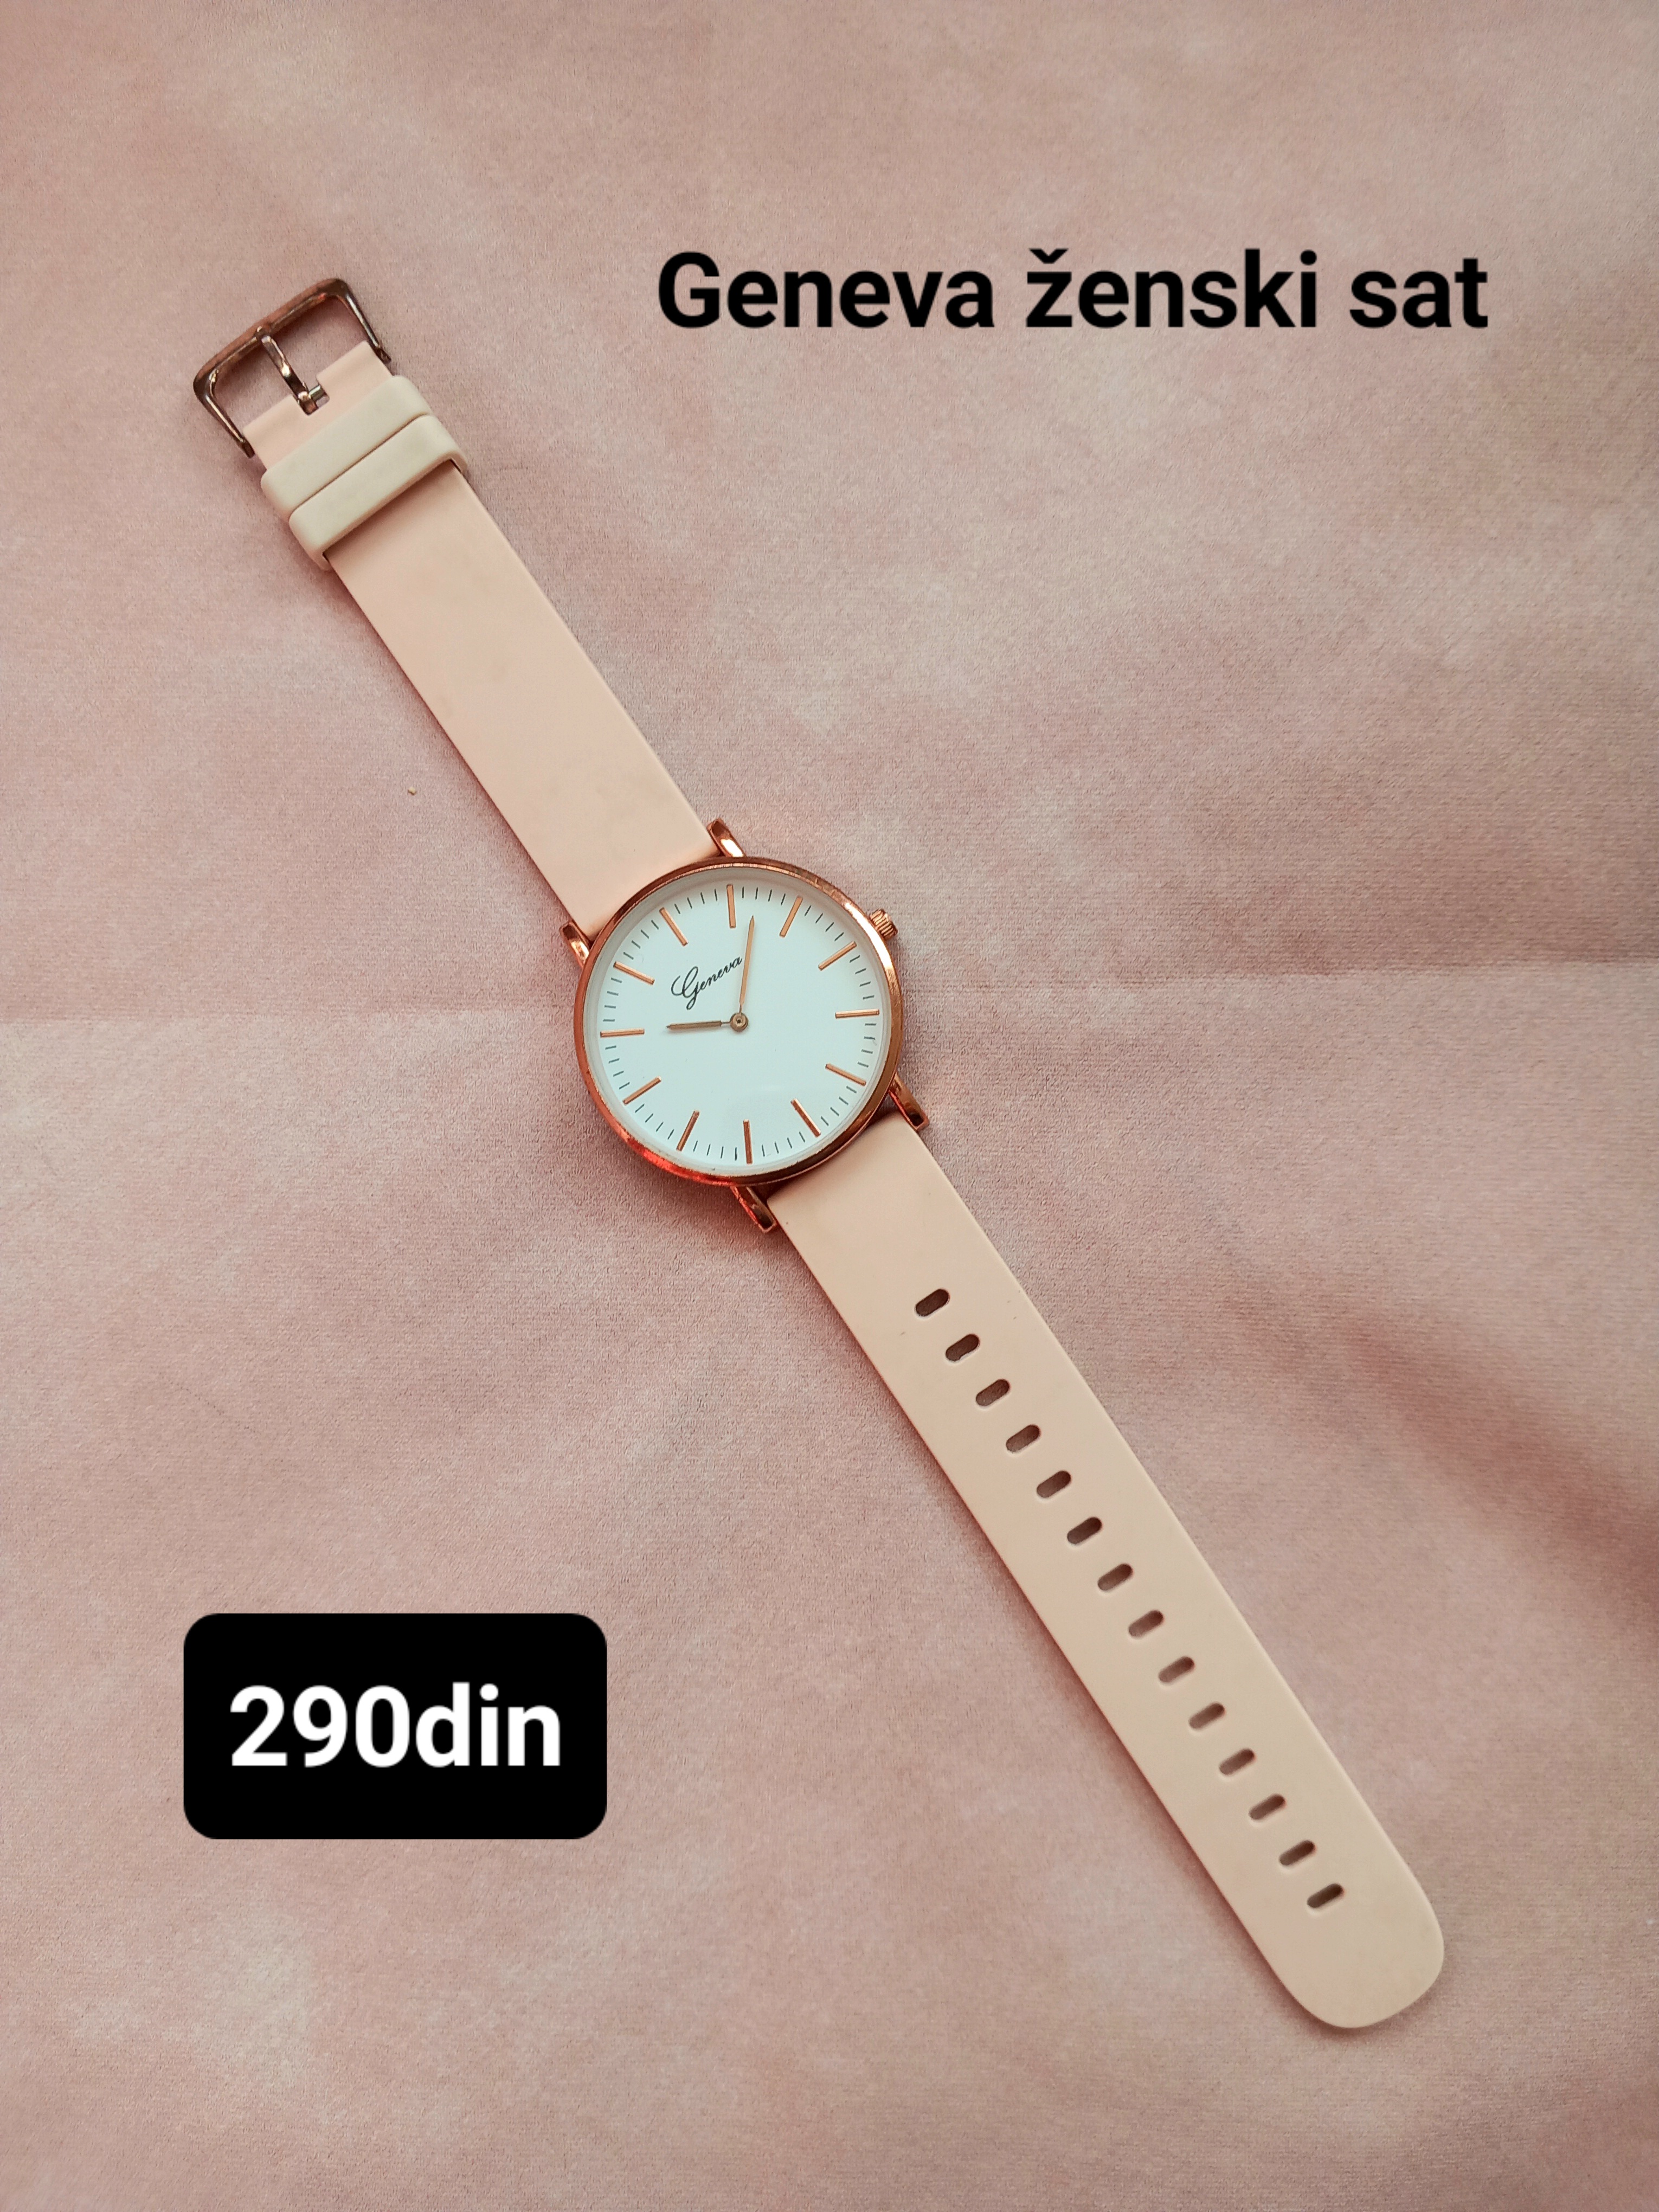 Geneva ženski sat sa silikonskom narukvicom roze boje